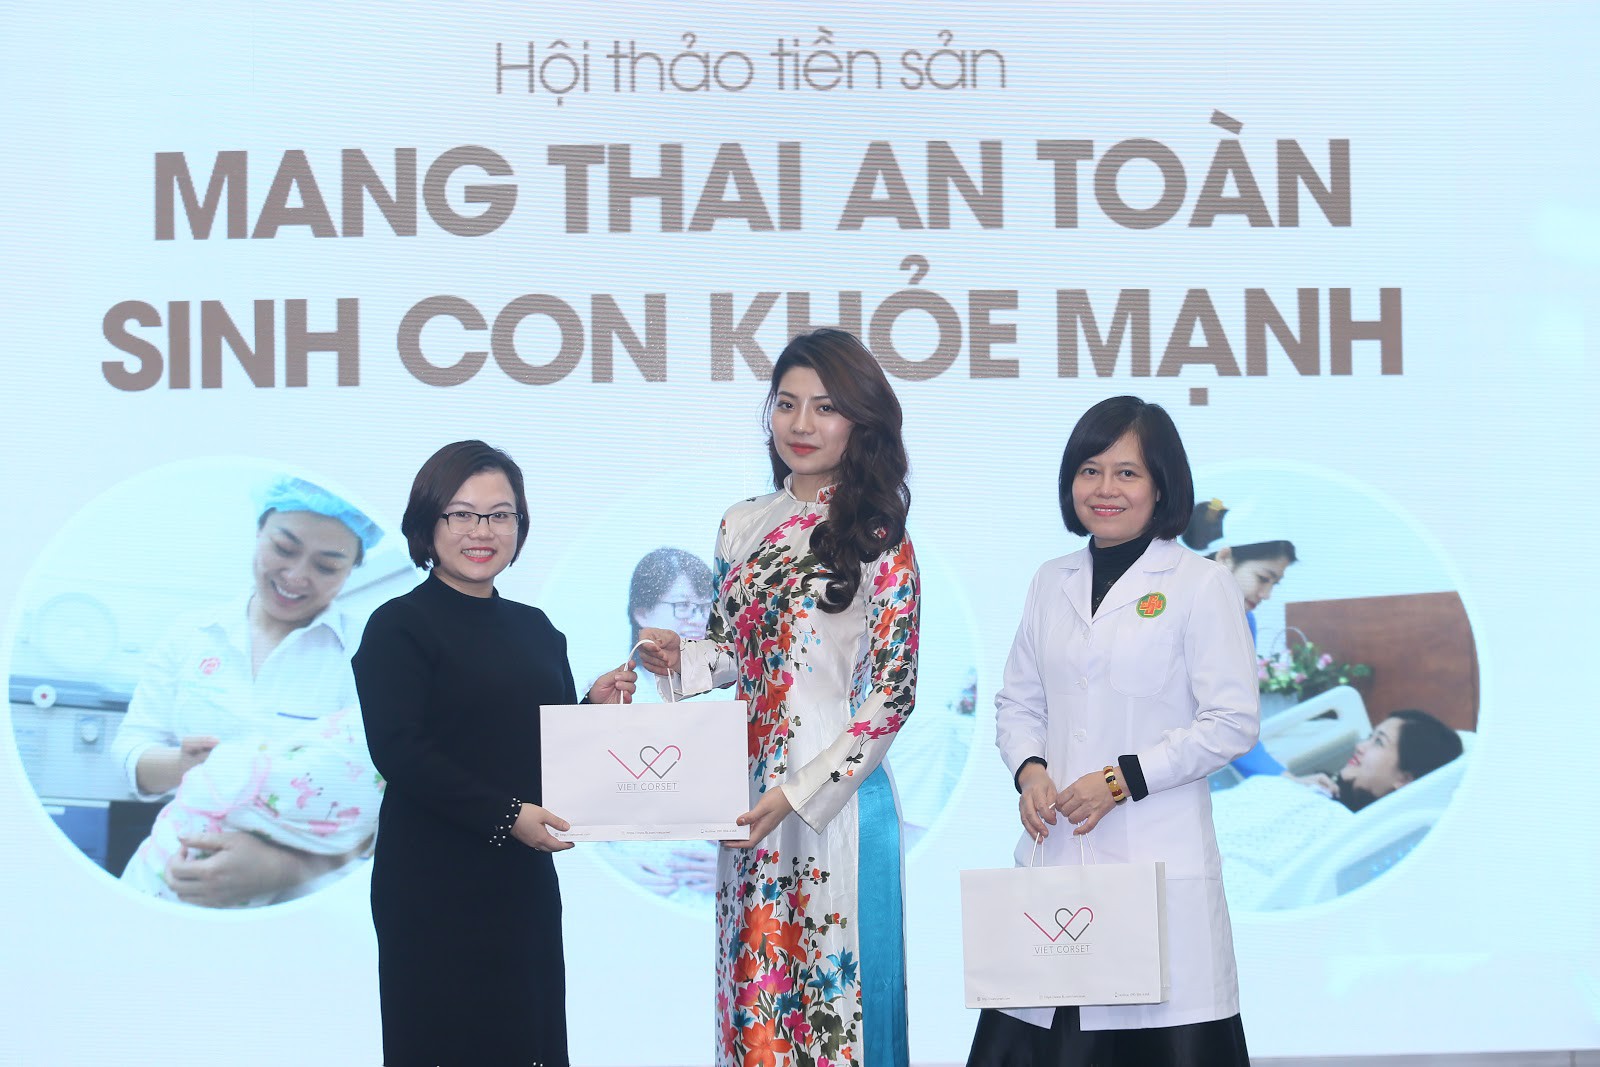 Latex giảm eo made in Việt Nam được giới thiệu hoành tráng tại hội nghị Bệnh viện TƯQĐ 108 - Ảnh 4.